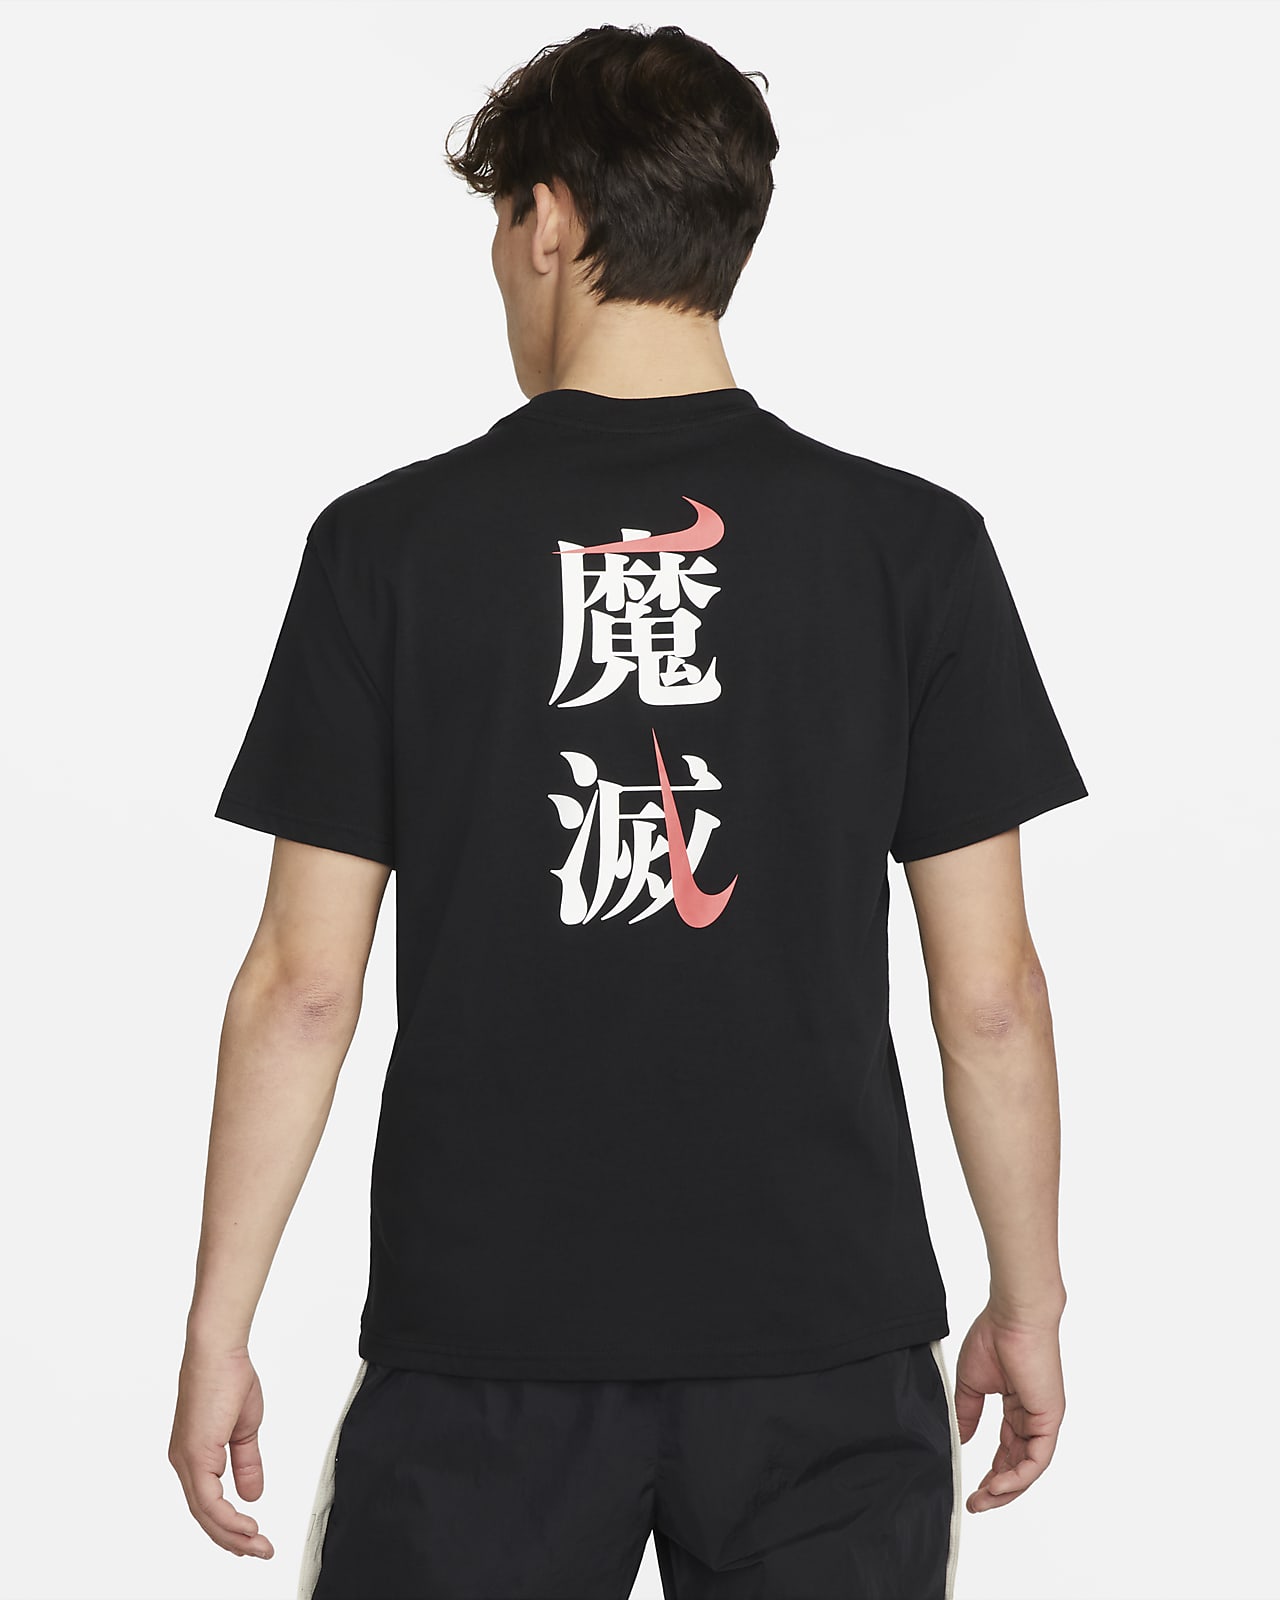 ナイキ スポーツウェア SETSUBUN メンズ Tシャツ